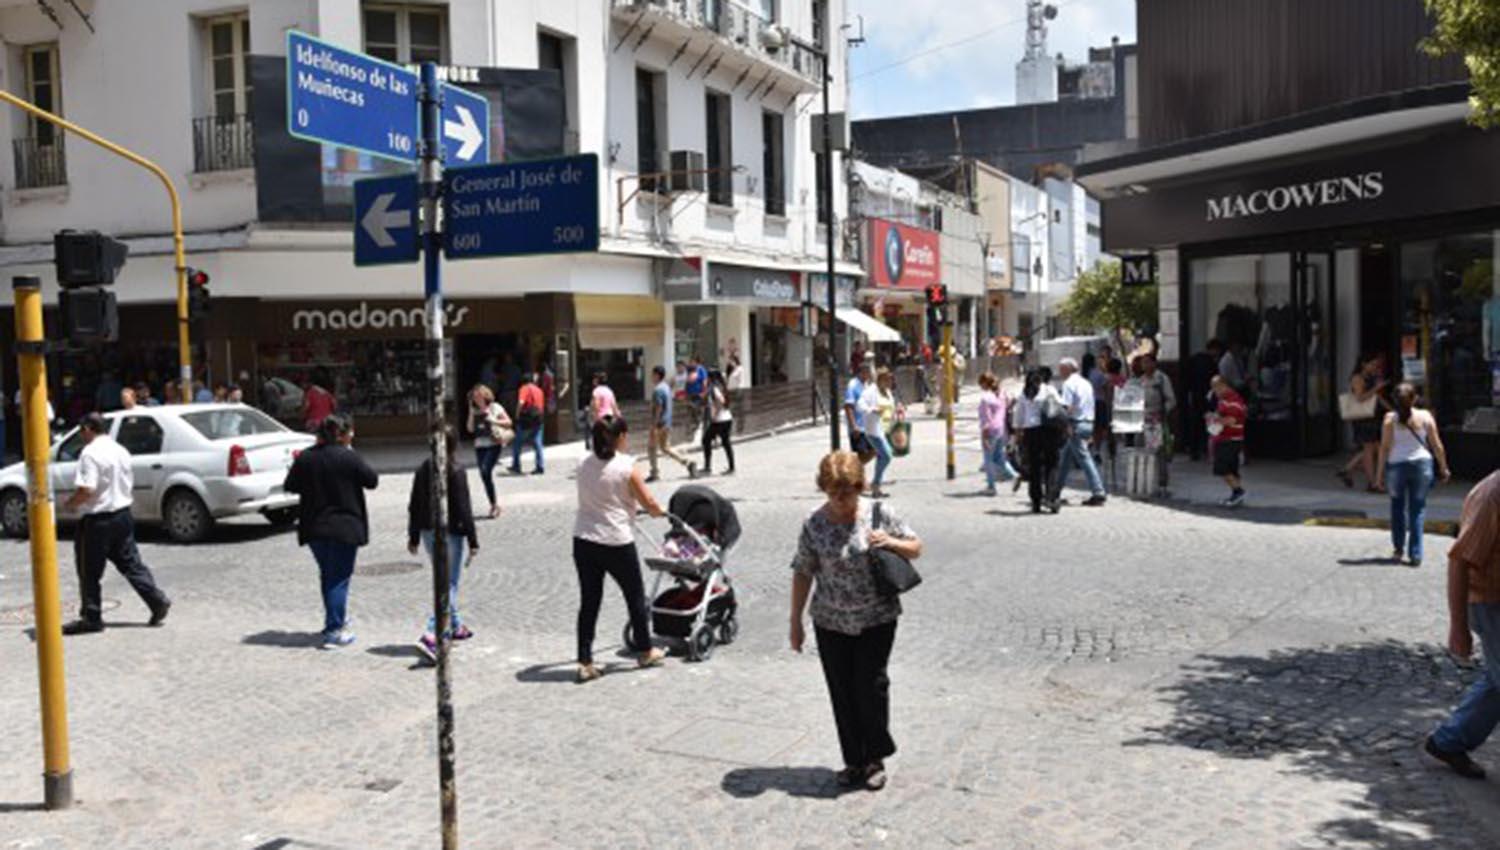 La esquina de Muñecas y San Martín, en pleno centro de la capital. FOTO TOMADA DE SMT.GOB.AR